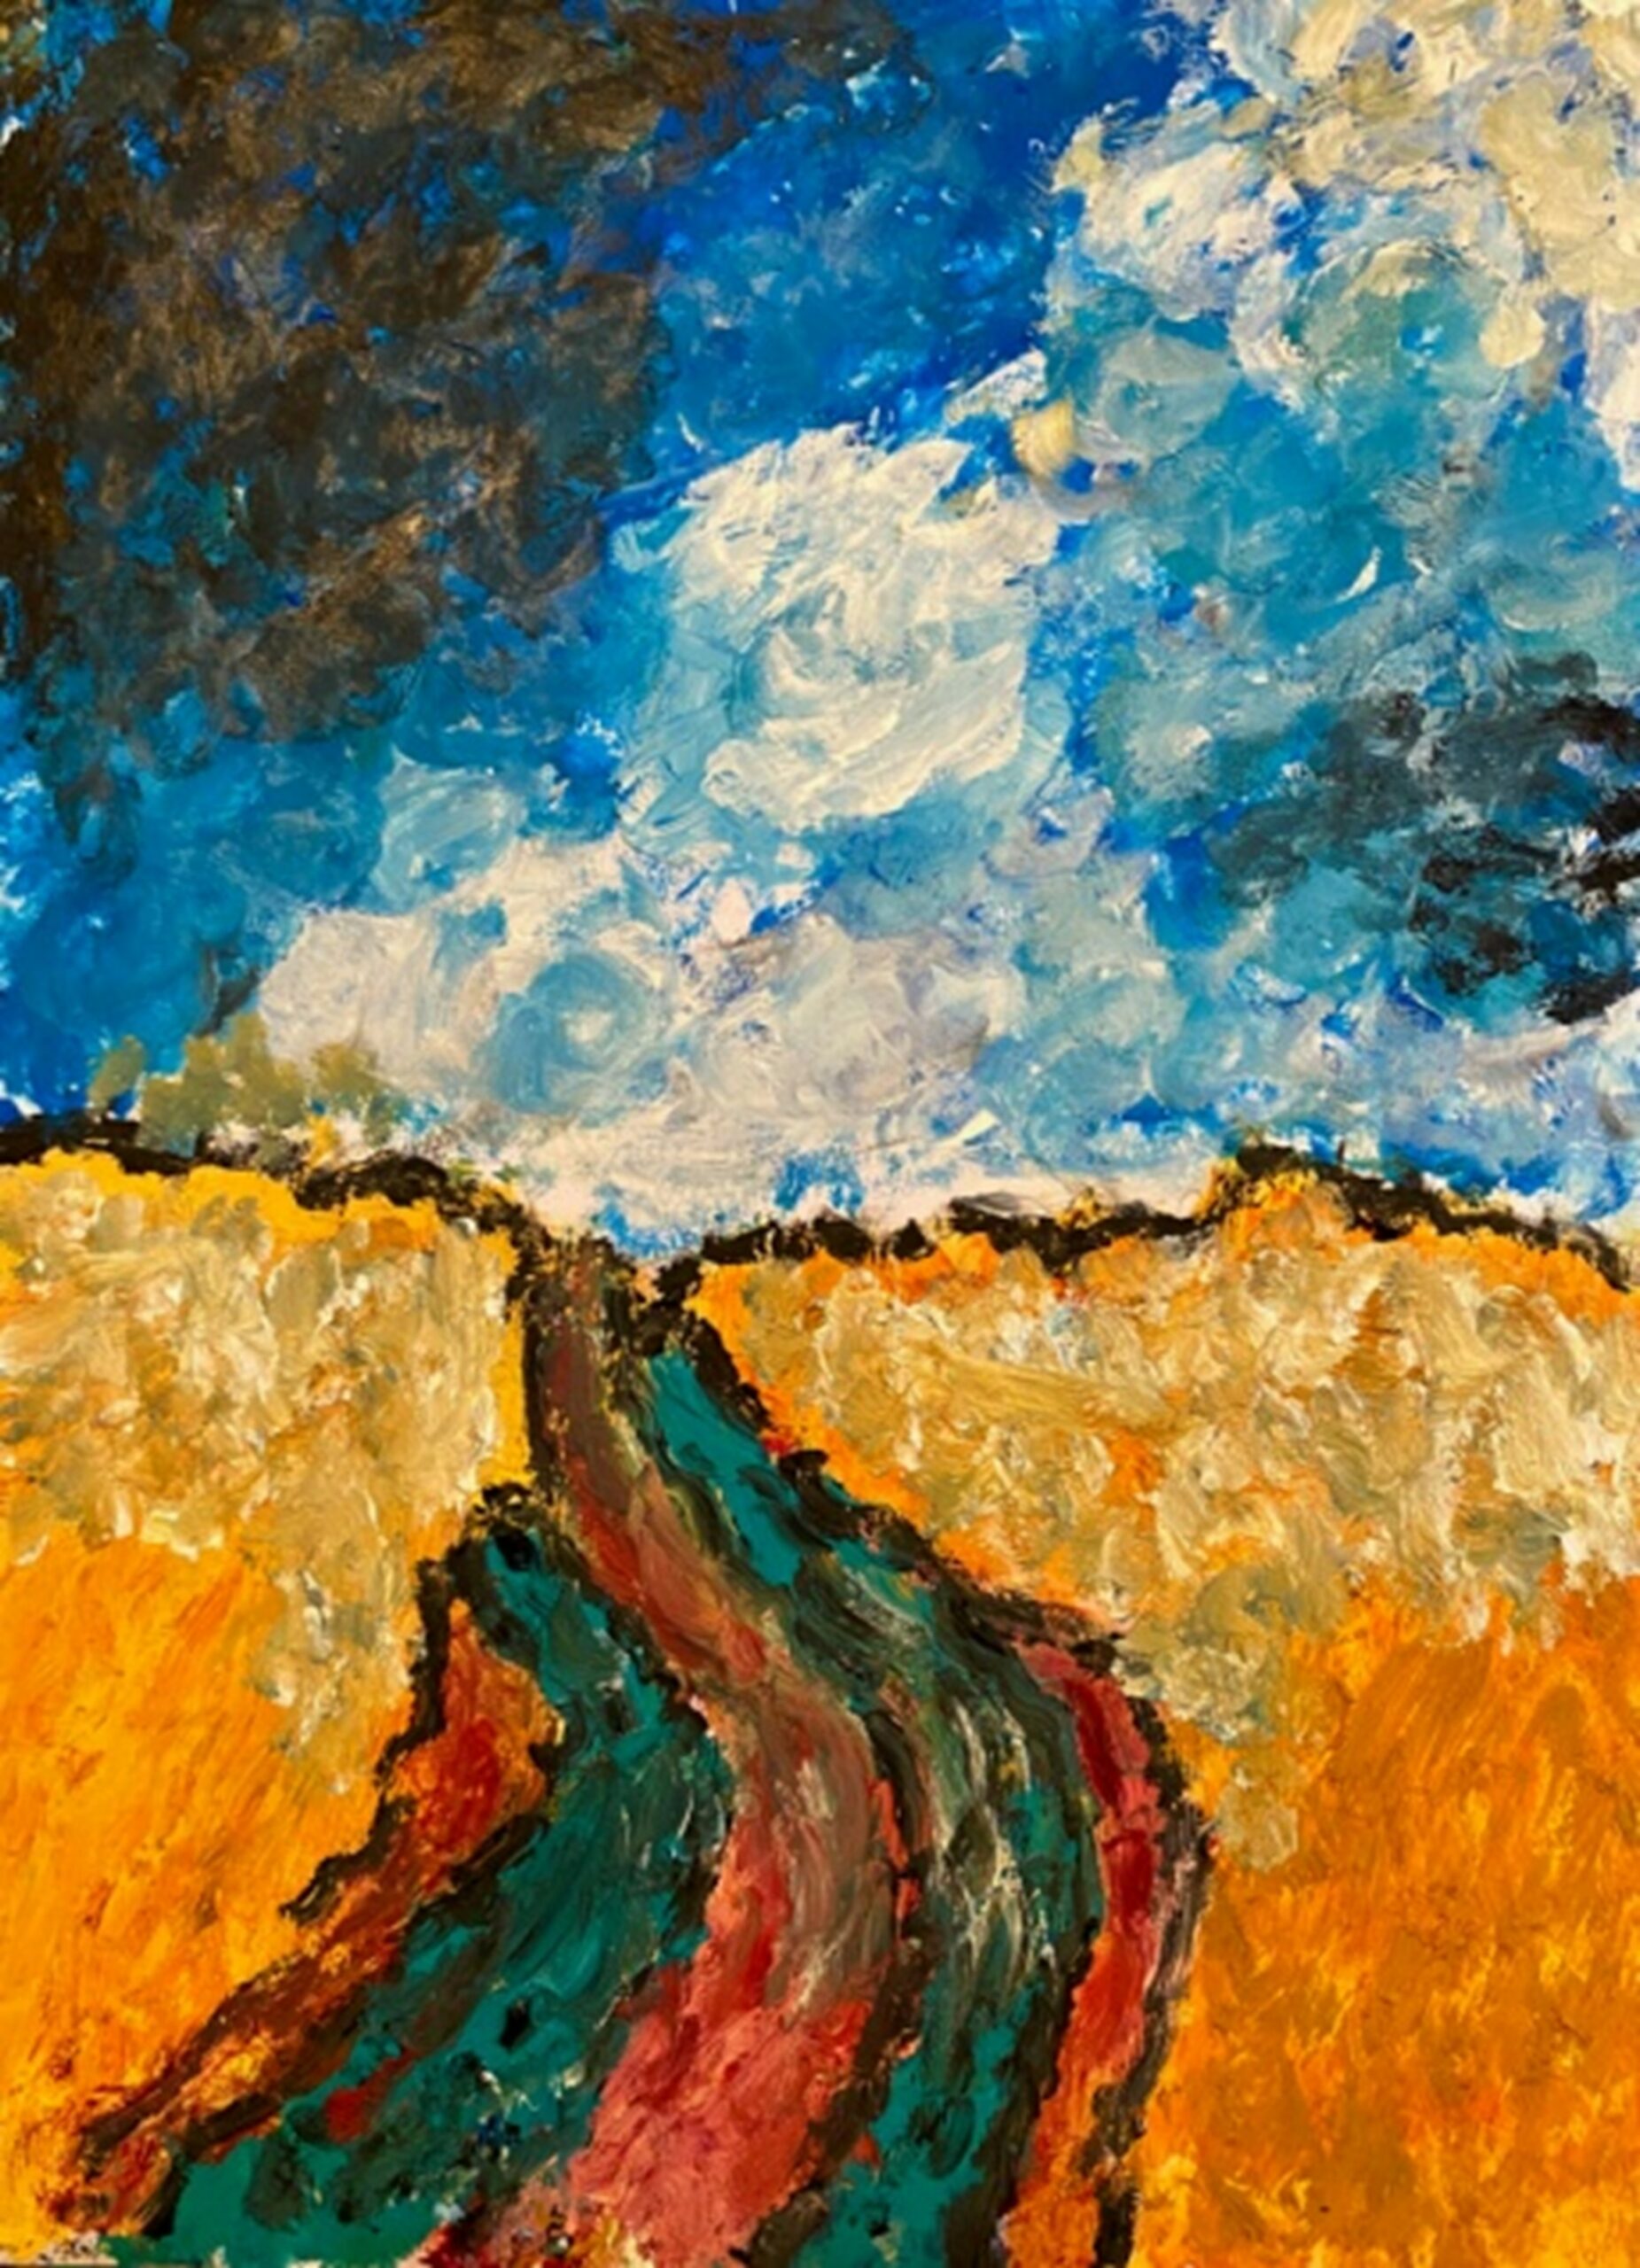 Gemälde inspiriert von Vincent van Gogh´s Bild „Weizenfeld“.